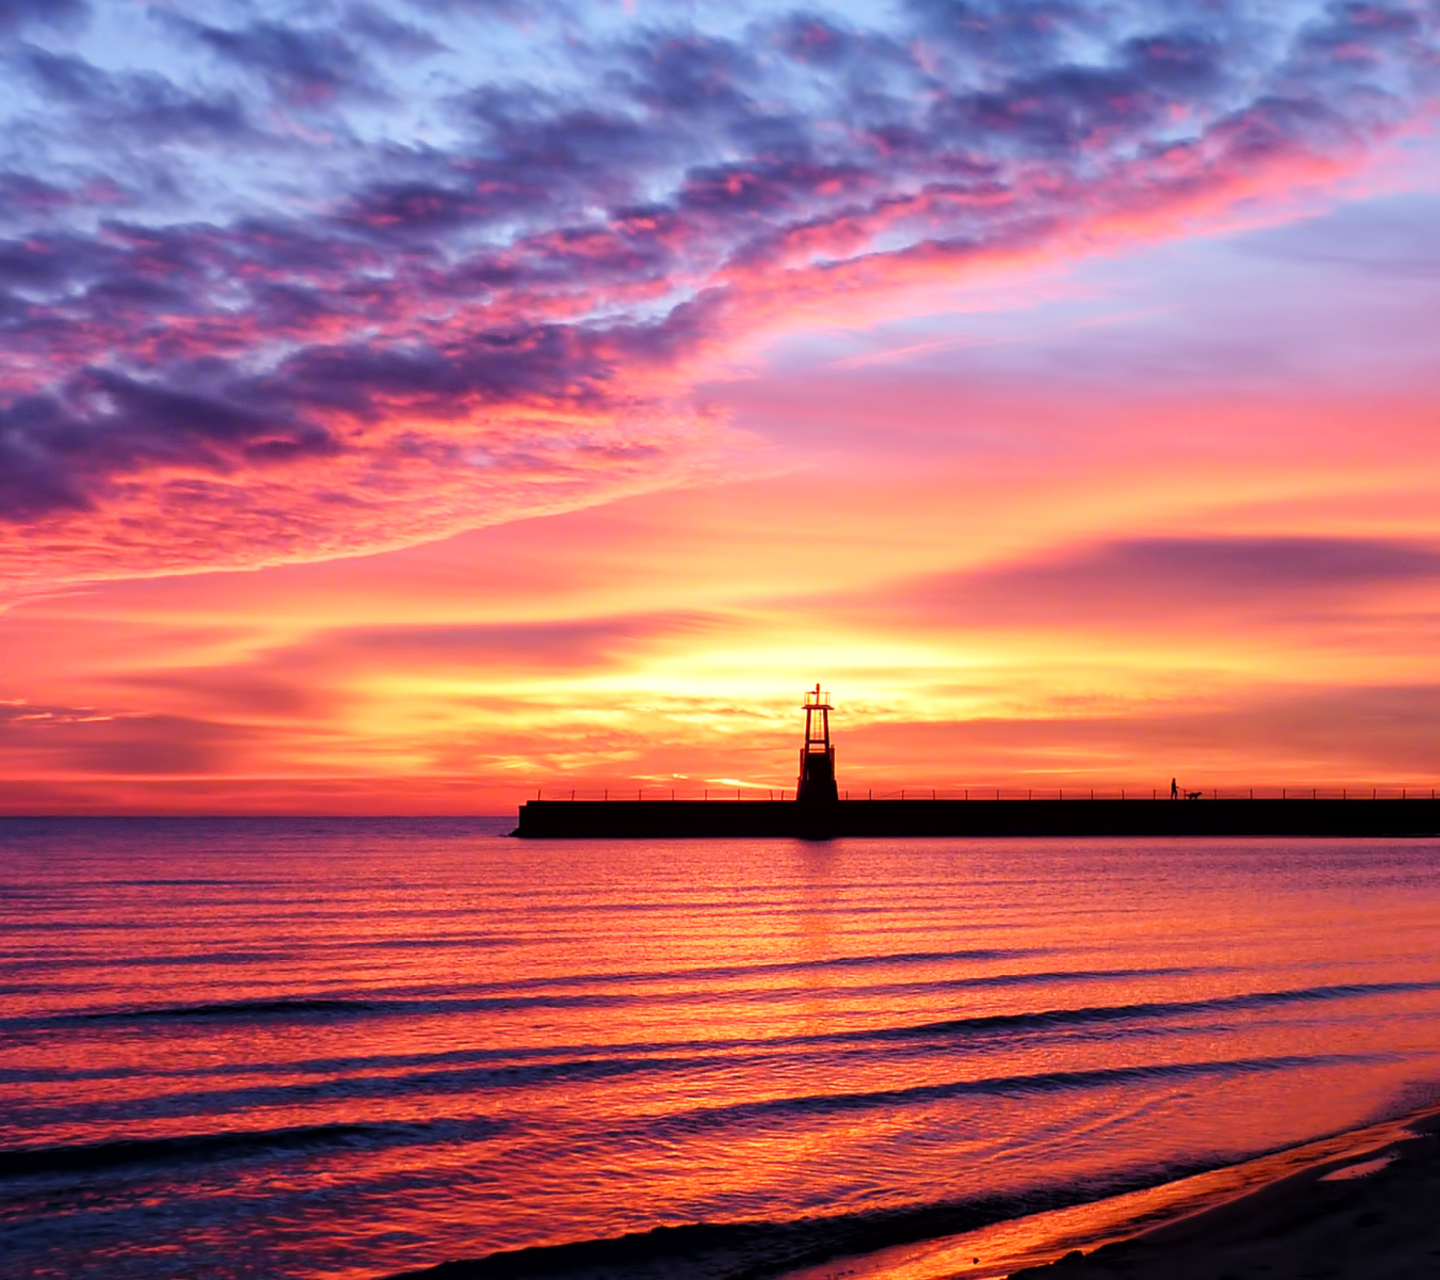 Обои Lighthouse And Red Sunset Beach 1440x1280